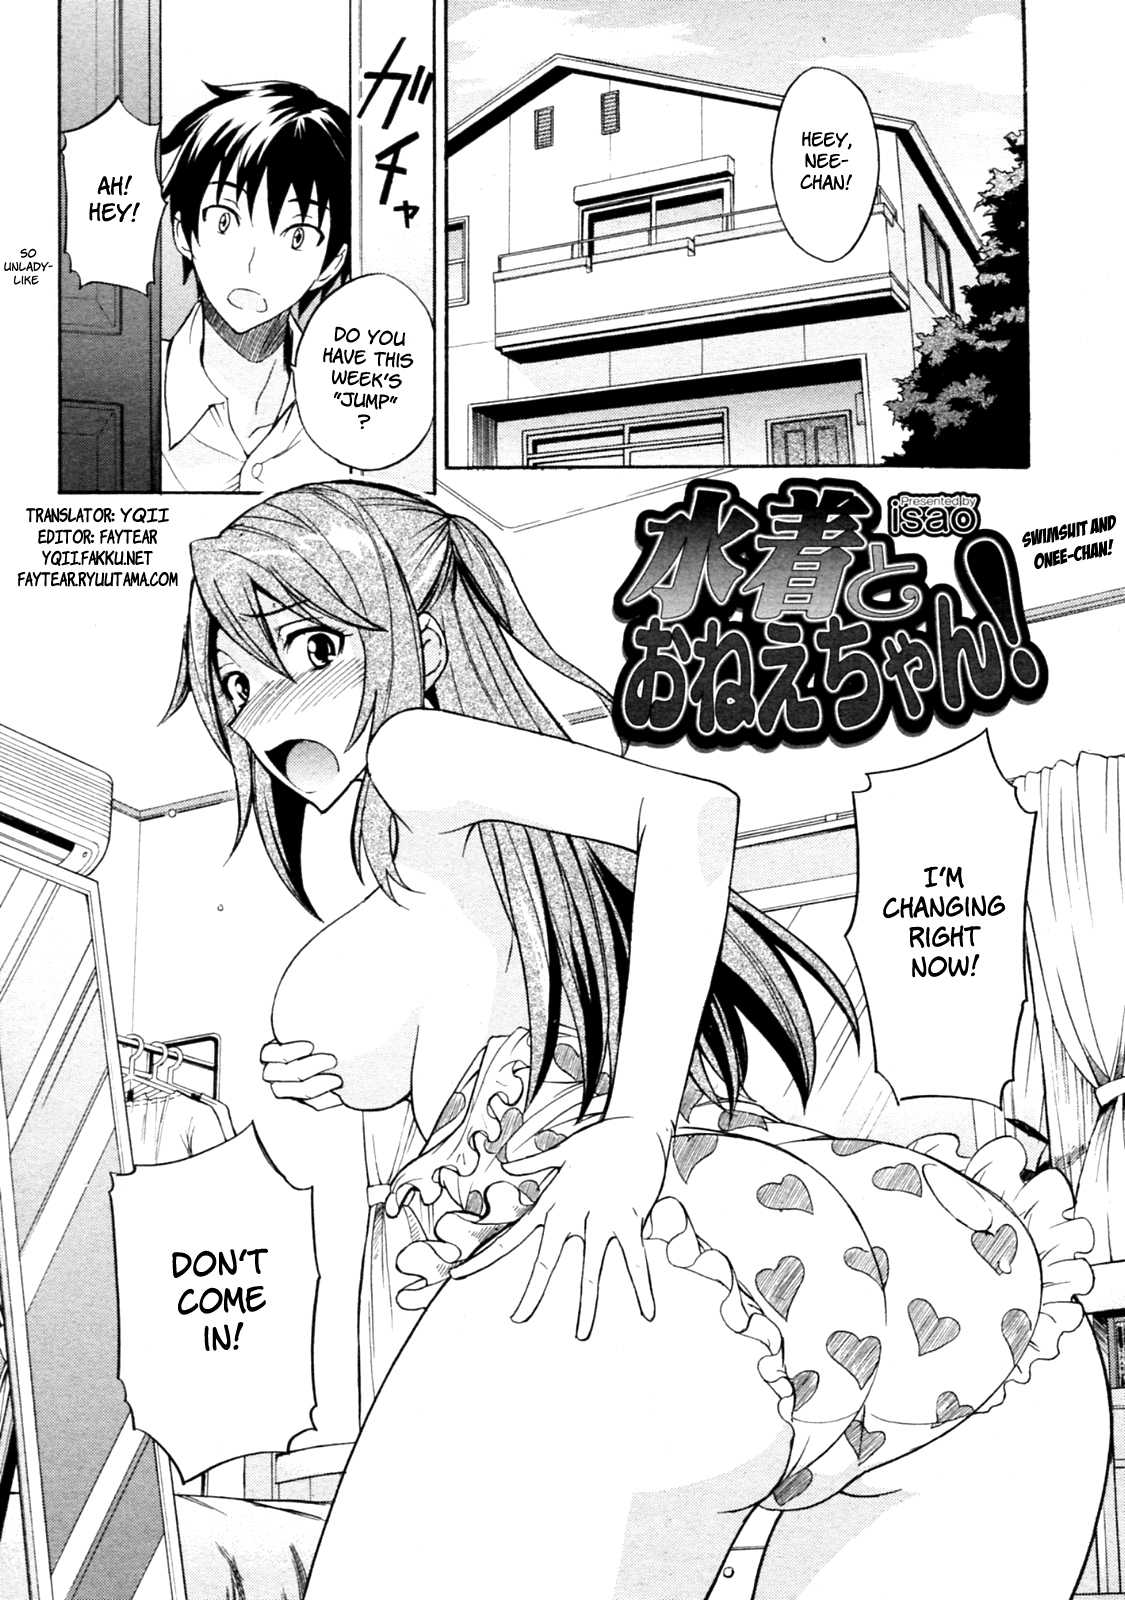 Ecchi hentai manga